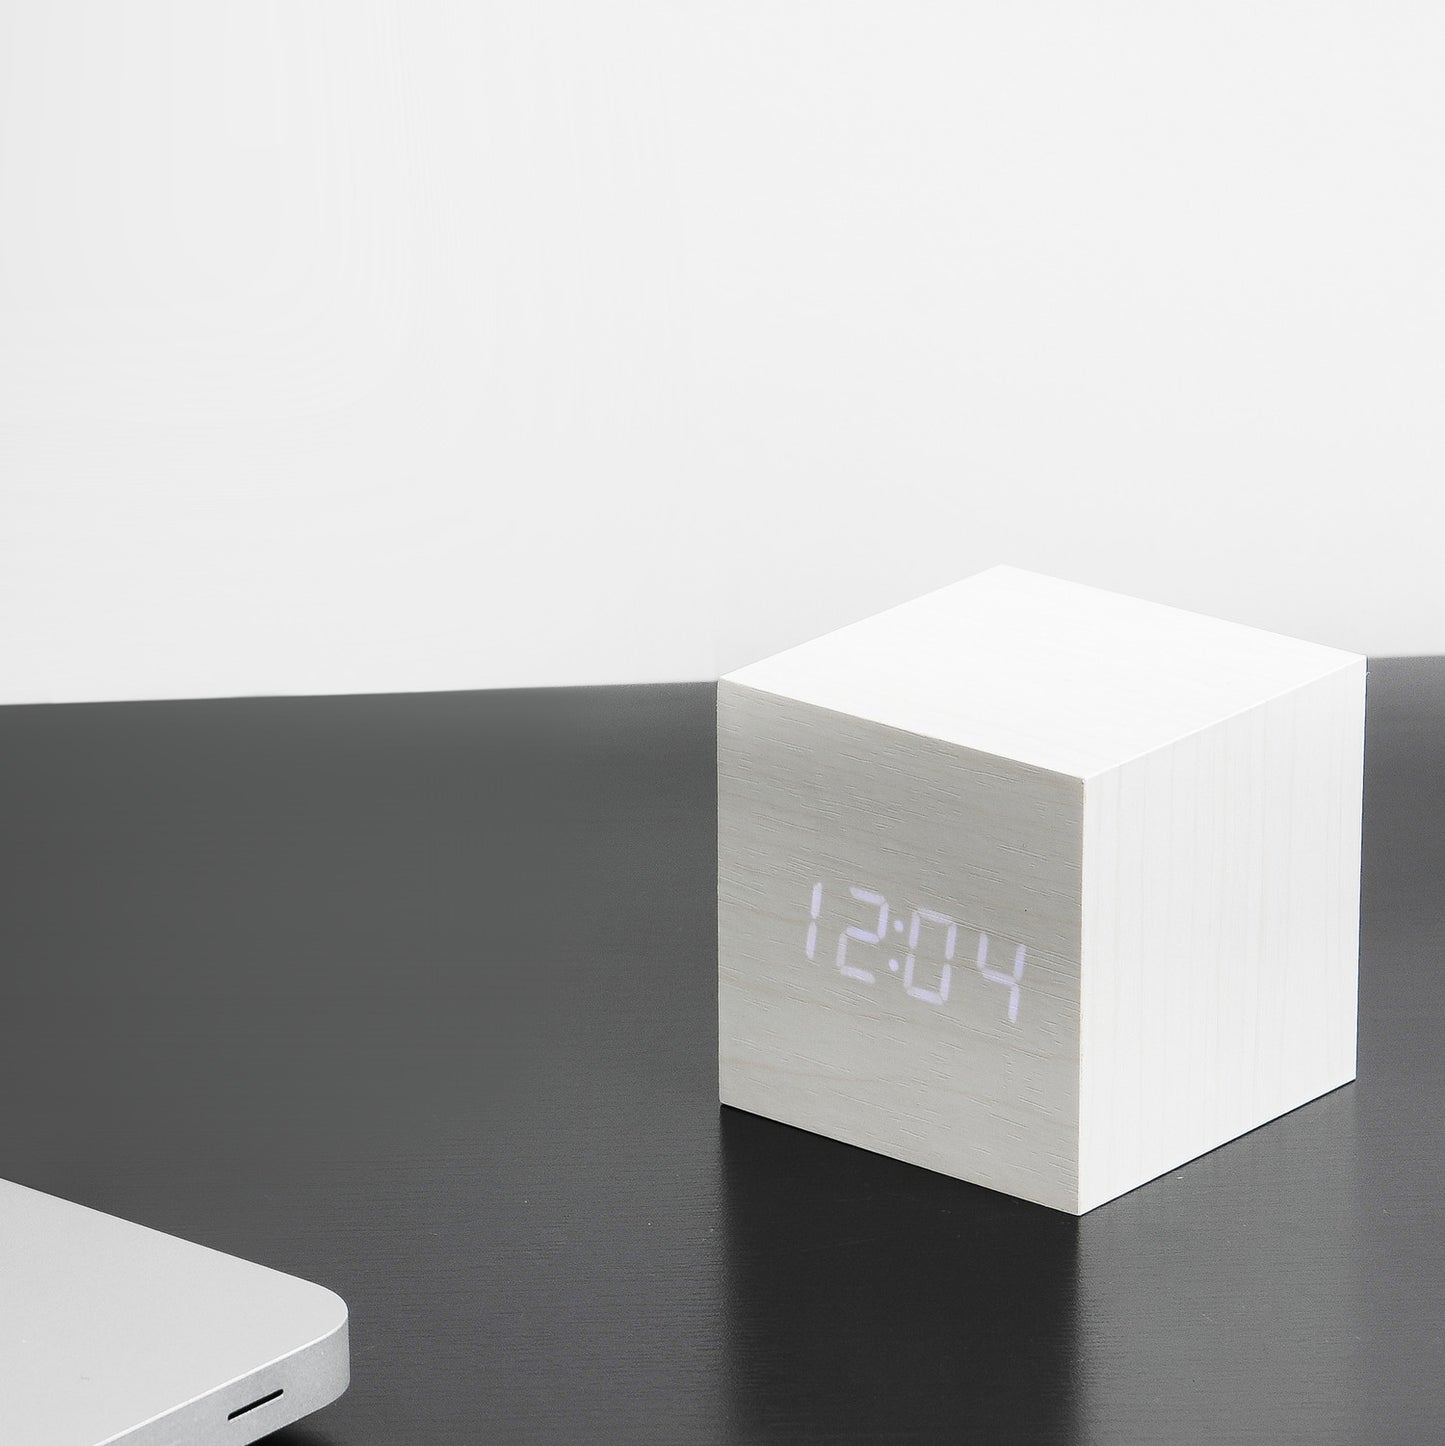 Cube Click Clock - White